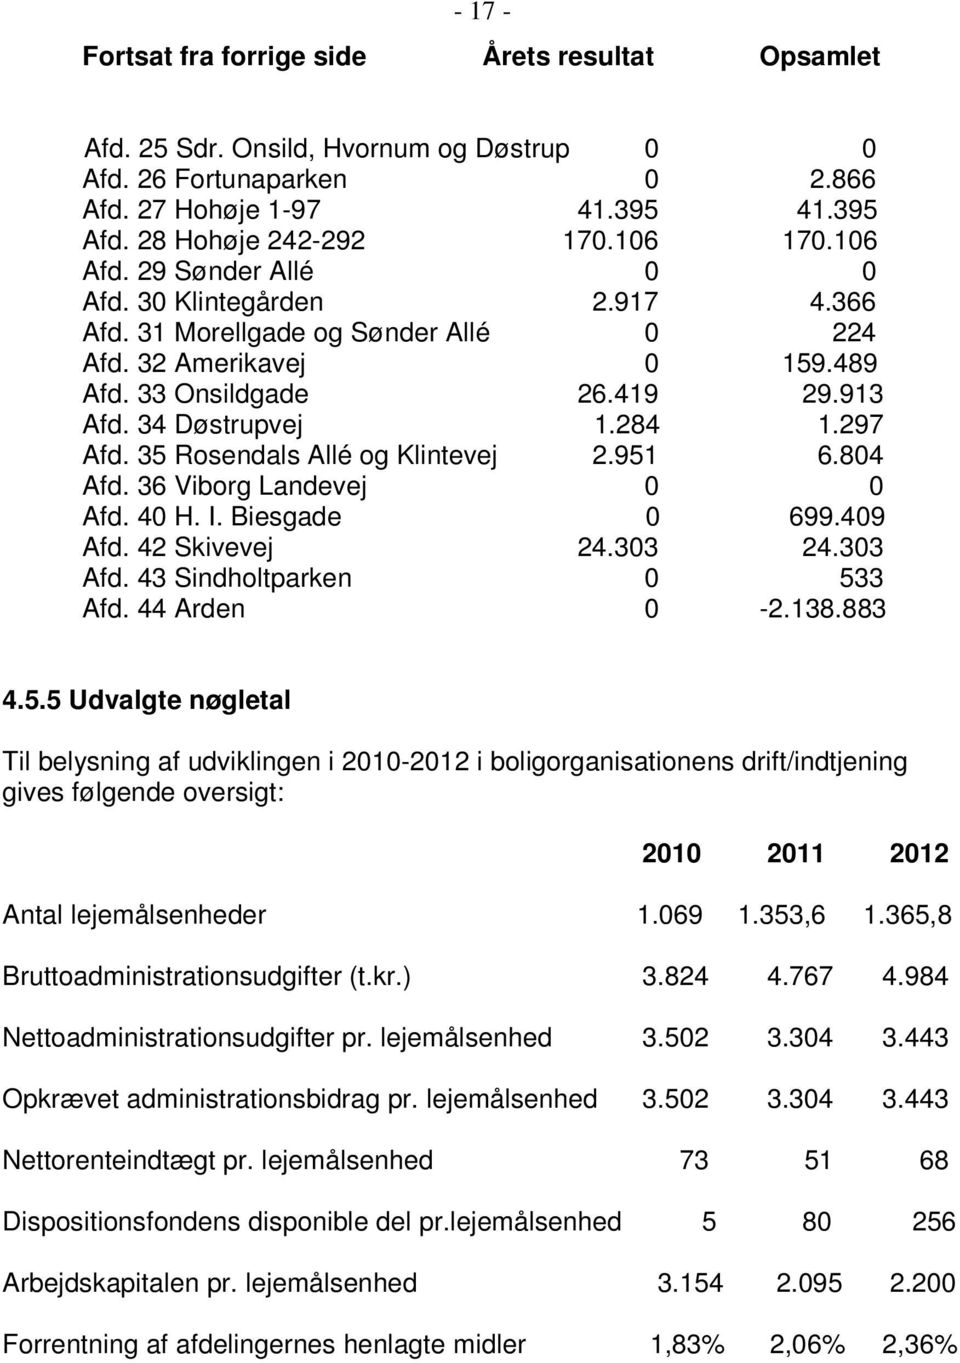 35 Rosendals Allé og Klintevej 2.951 6.804 Afd. 36 Viborg Landevej 0 0 Afd. 40 H. I. Biesgade 0 699.409 Afd. 42 Skivevej 24.303 24.303 Afd. 43 Sindholtparken 0 533 Afd. 44 Arden 0-2.138.883 4.5.5 Udvalgte nøgletal Til belysning af udviklingen i 2010-2012 i boligorganisationens drift/indtjening gives følgende oversigt: 2010 2011 2012 Antal lejemålsenheder 1.